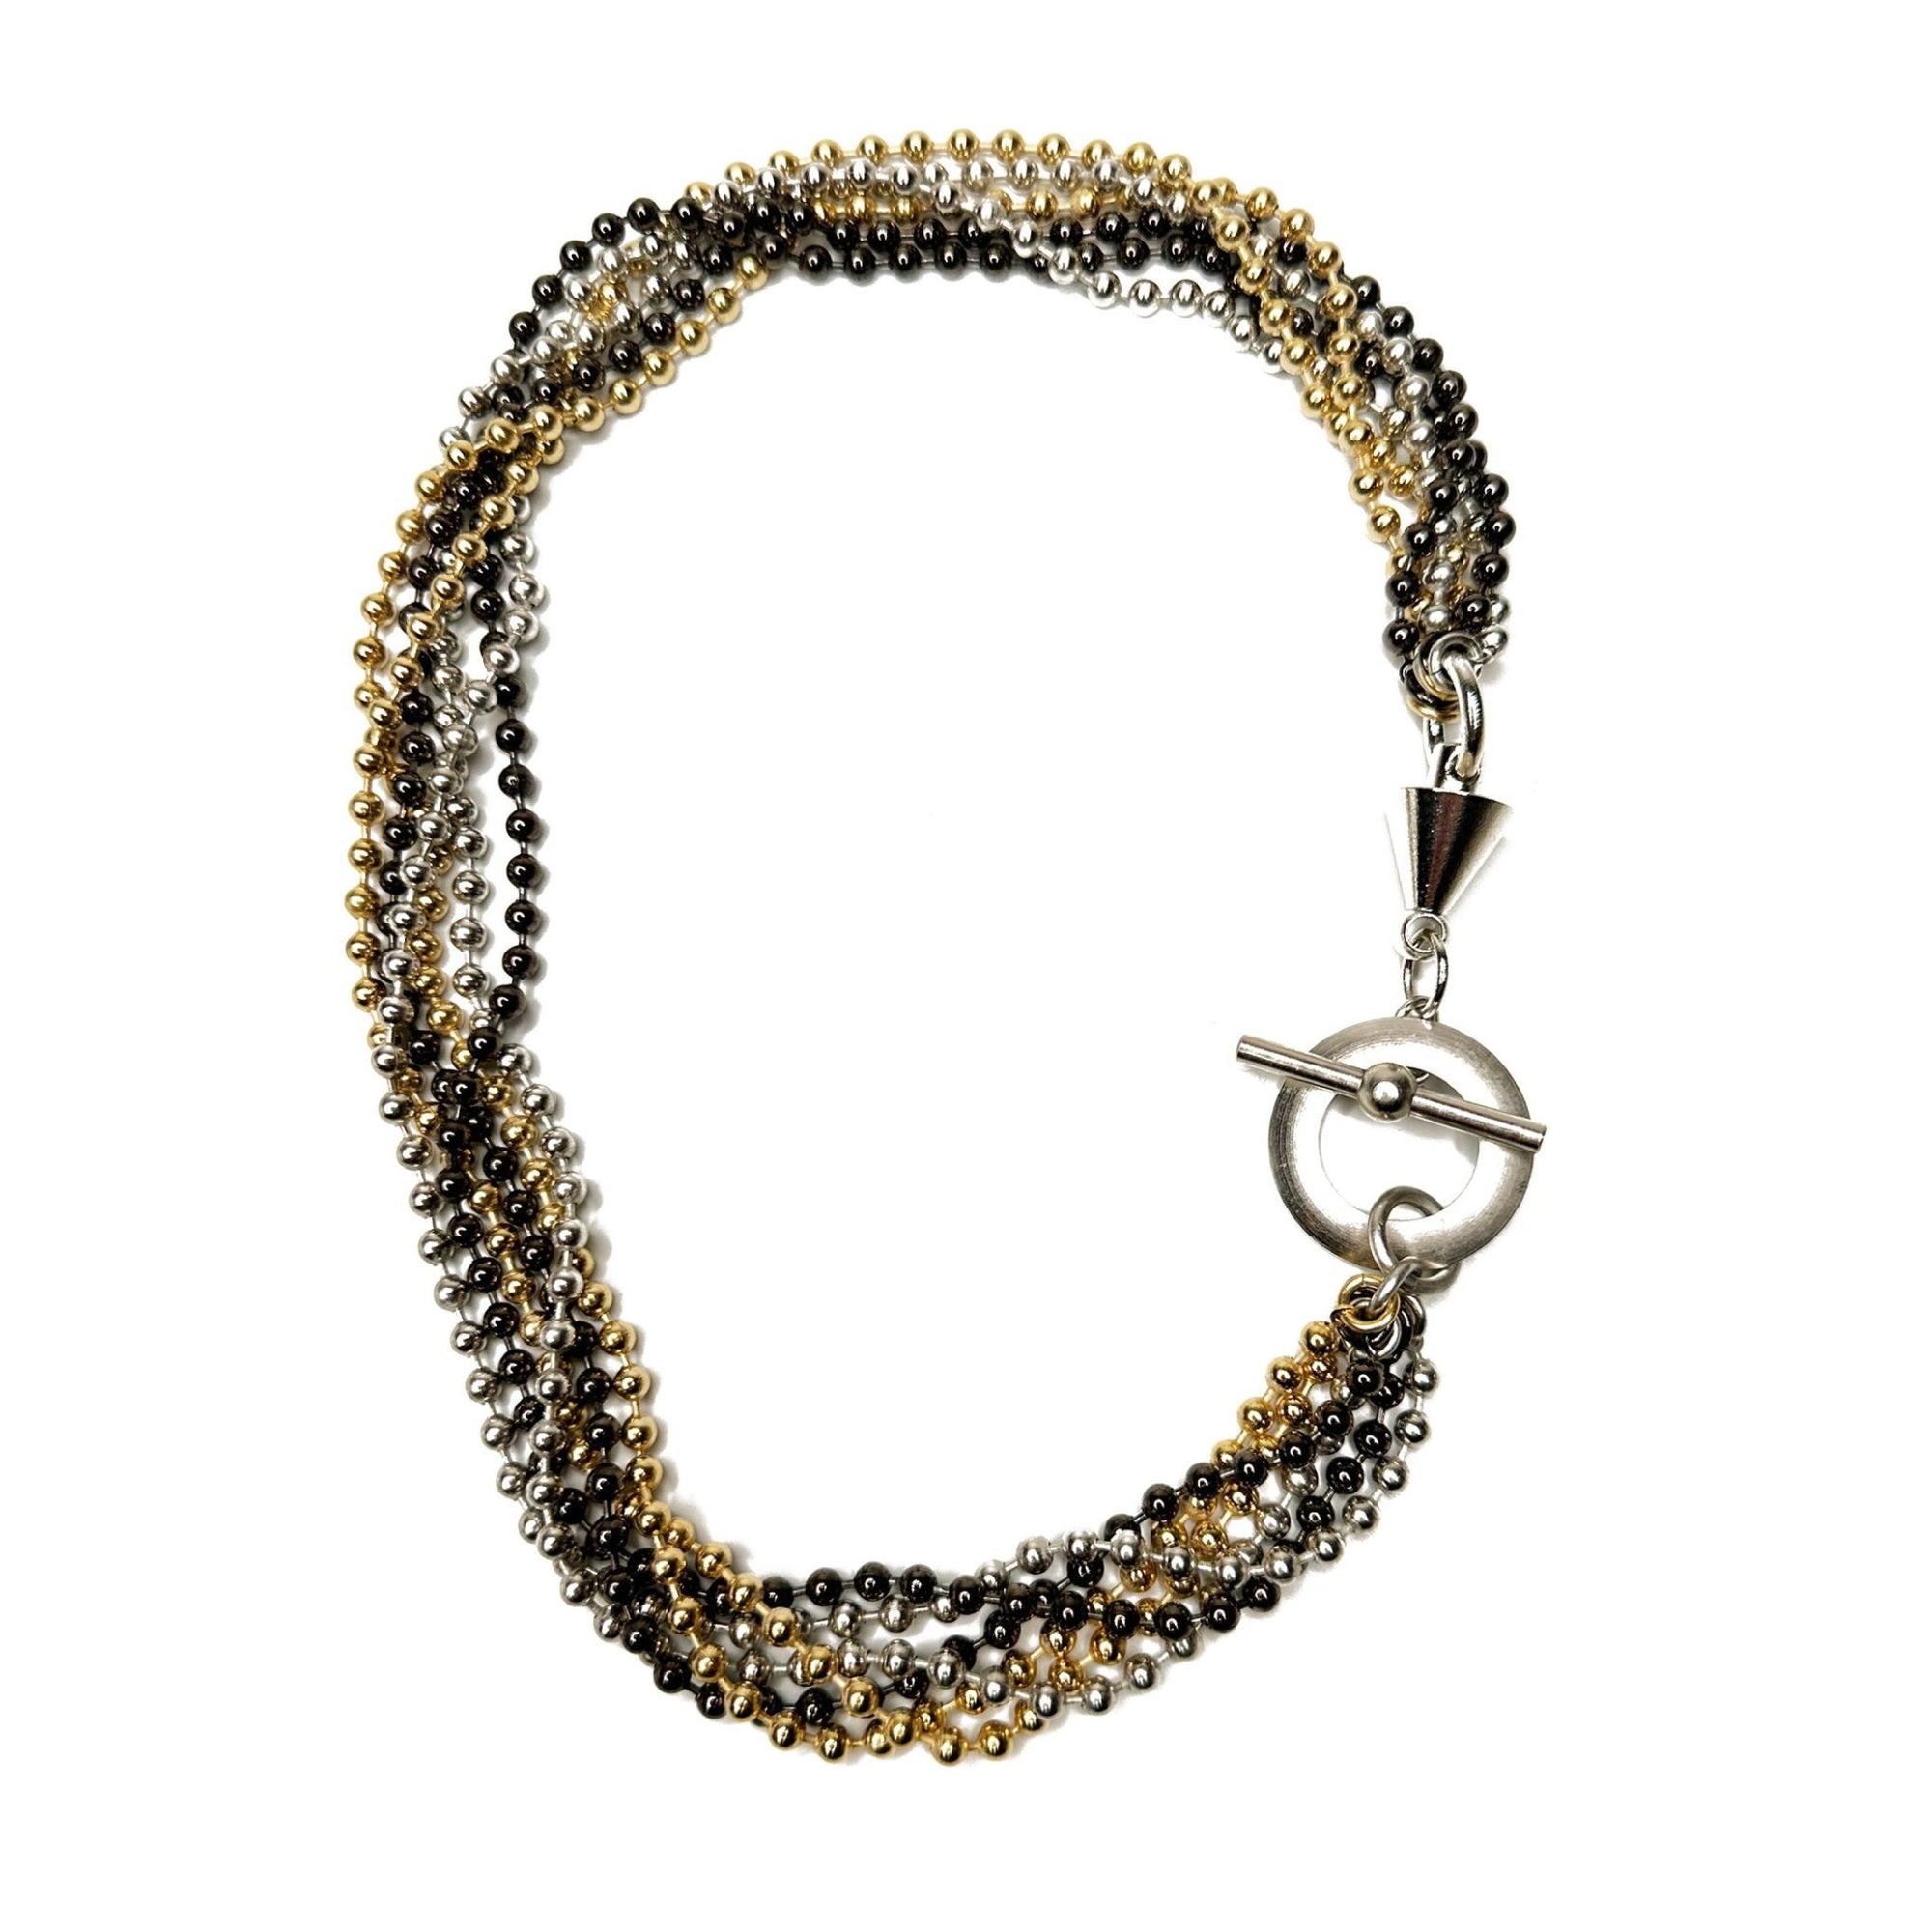 Multi Strand Bead Chain Necklace | Erica Zap Designs